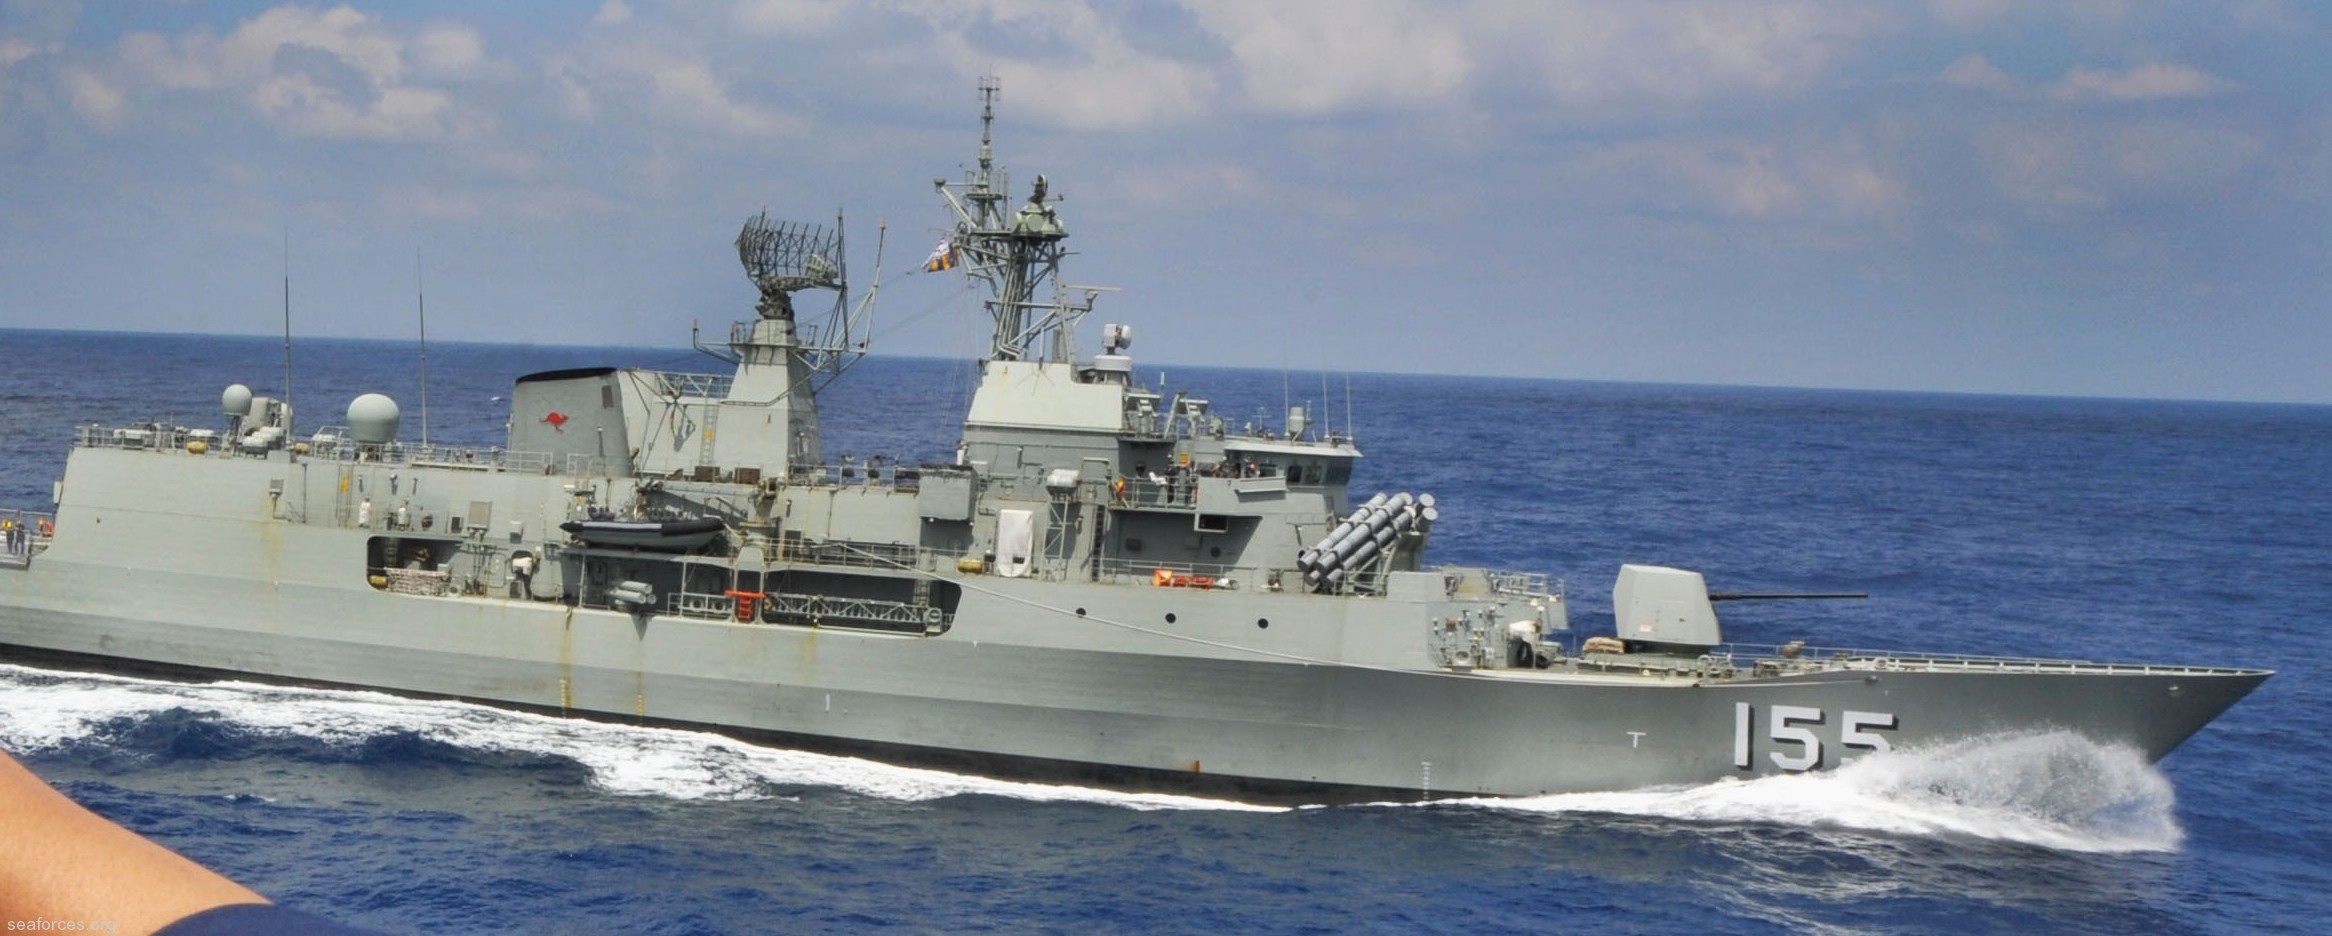 ffh-155 hms ballarat anzac class frigate royal australian navy 2012 34